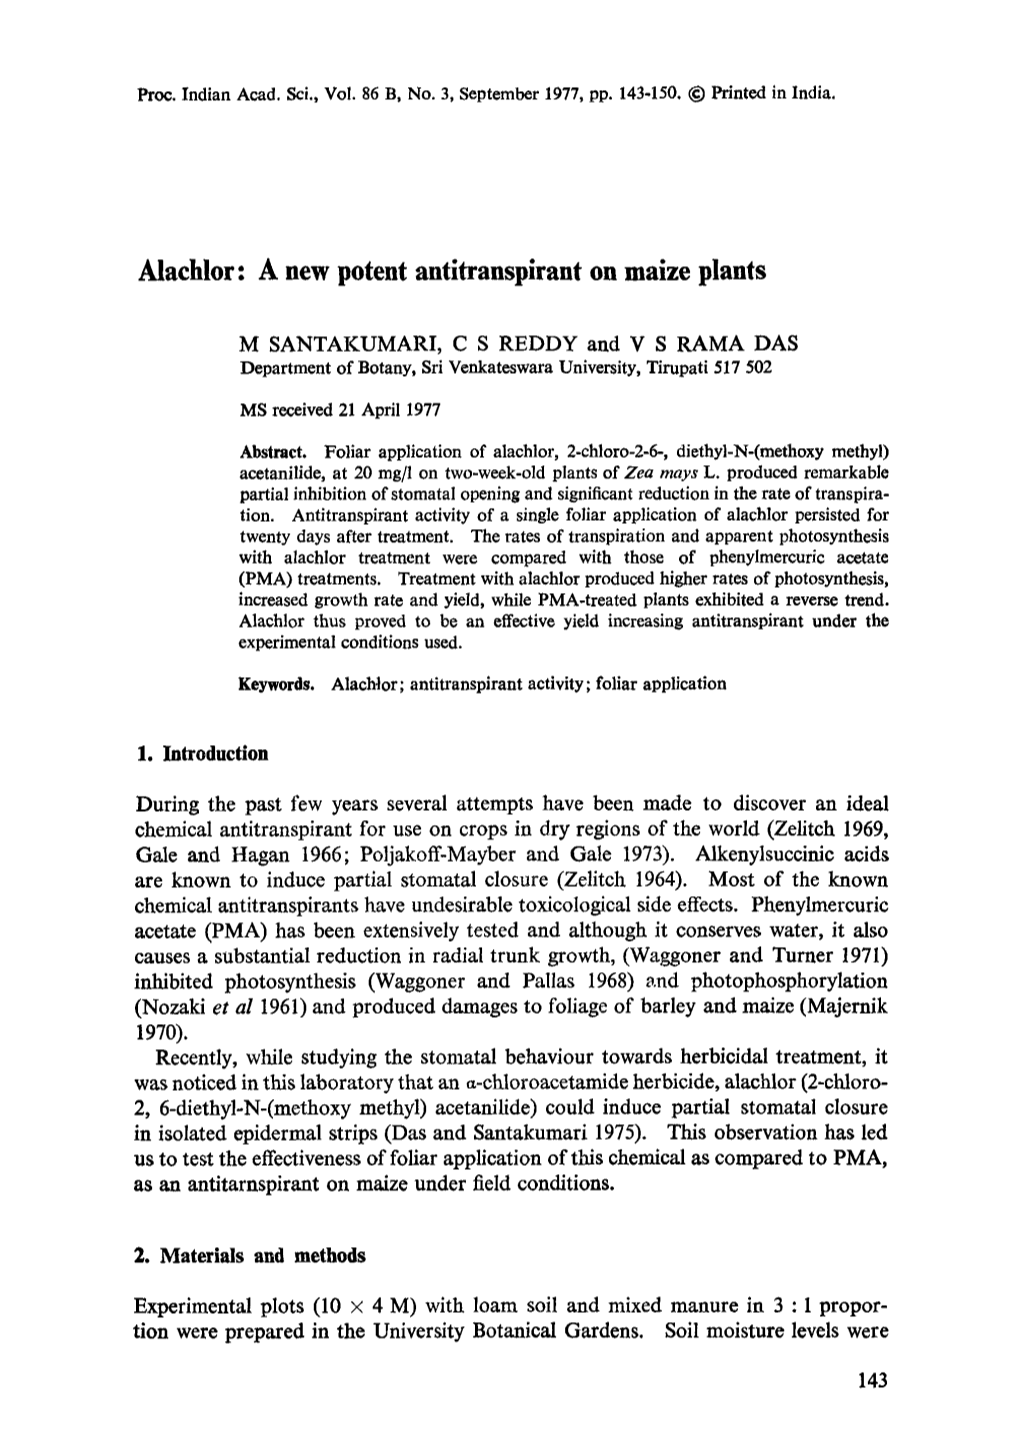 Alachlor: a New Potent Antitranspirant on Maize Plants